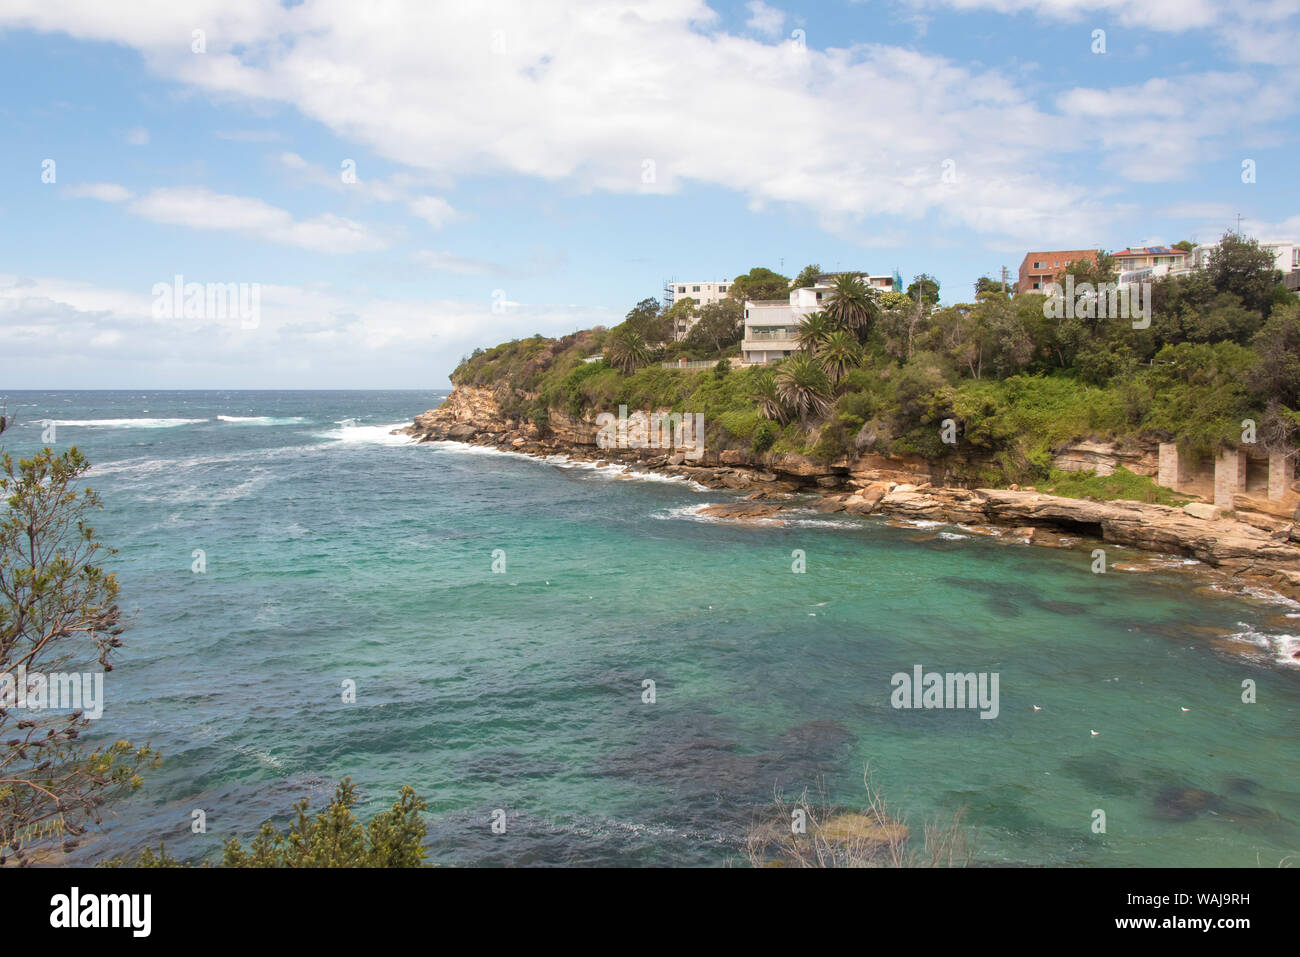 Australien, New South Wales, Sydney. Östlichen Strände. Bondi, Coogee Gordon's Bay an der Küste zu Fuß gut geschützt Schnorcheln Stockfoto